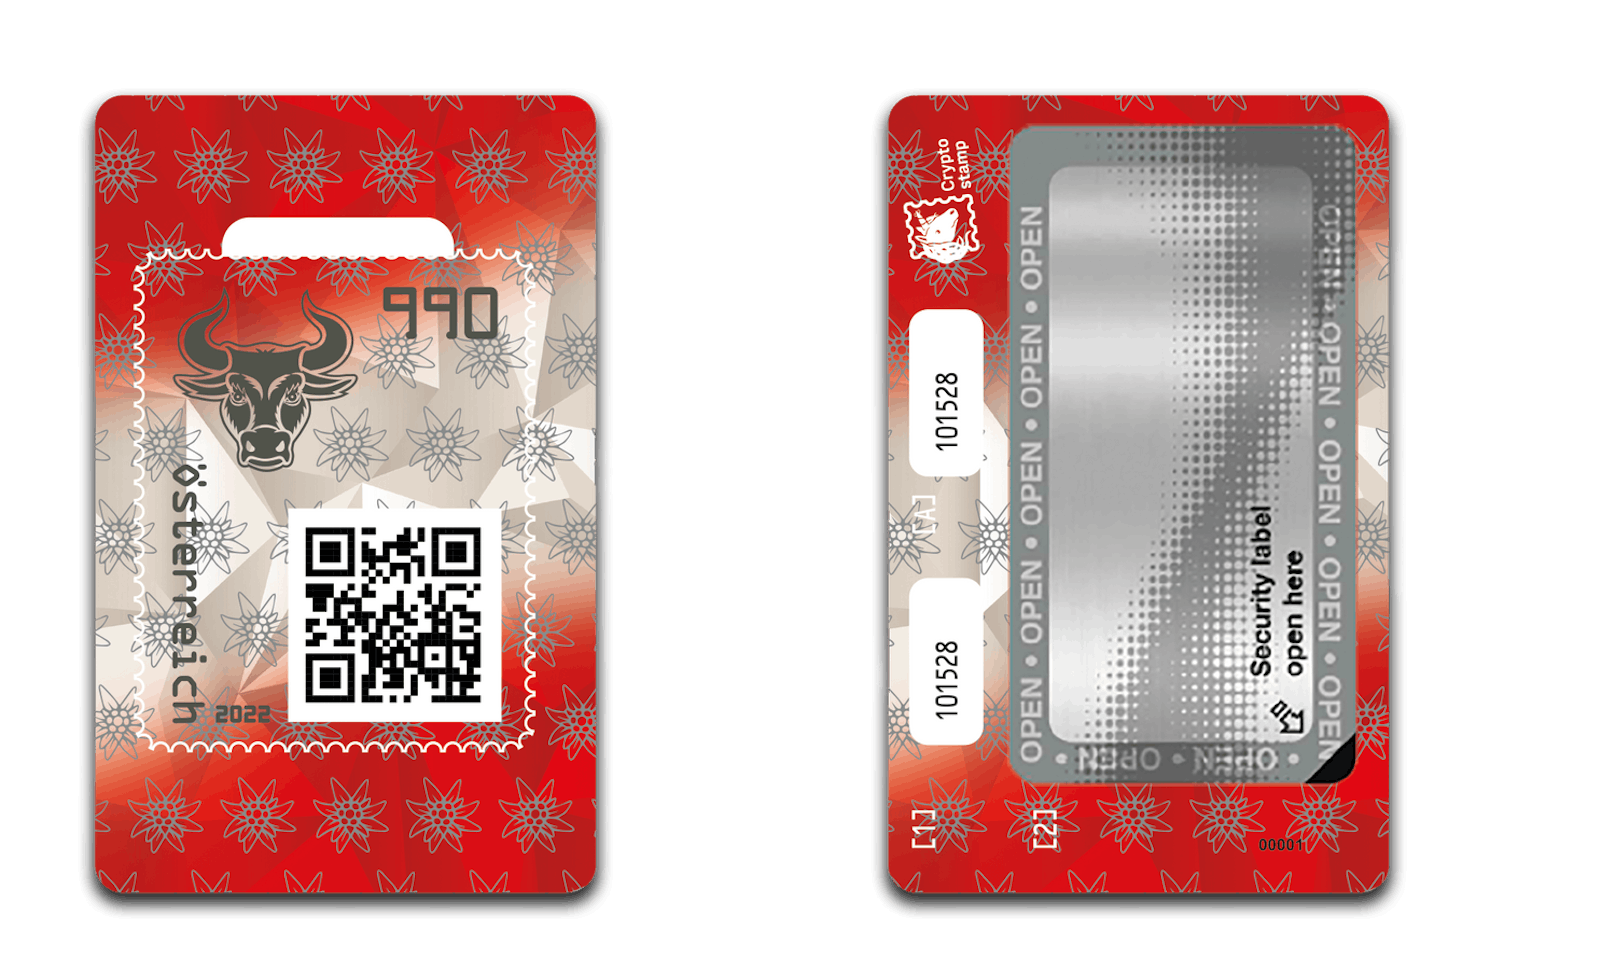 Auf der neuen Crypto stamp 4.0 der Österreichischen Post ist der Bulle zu sehen, sie ist in rot-weiß-rot gehalten und zeigt zusätzlich das Edelweiß.